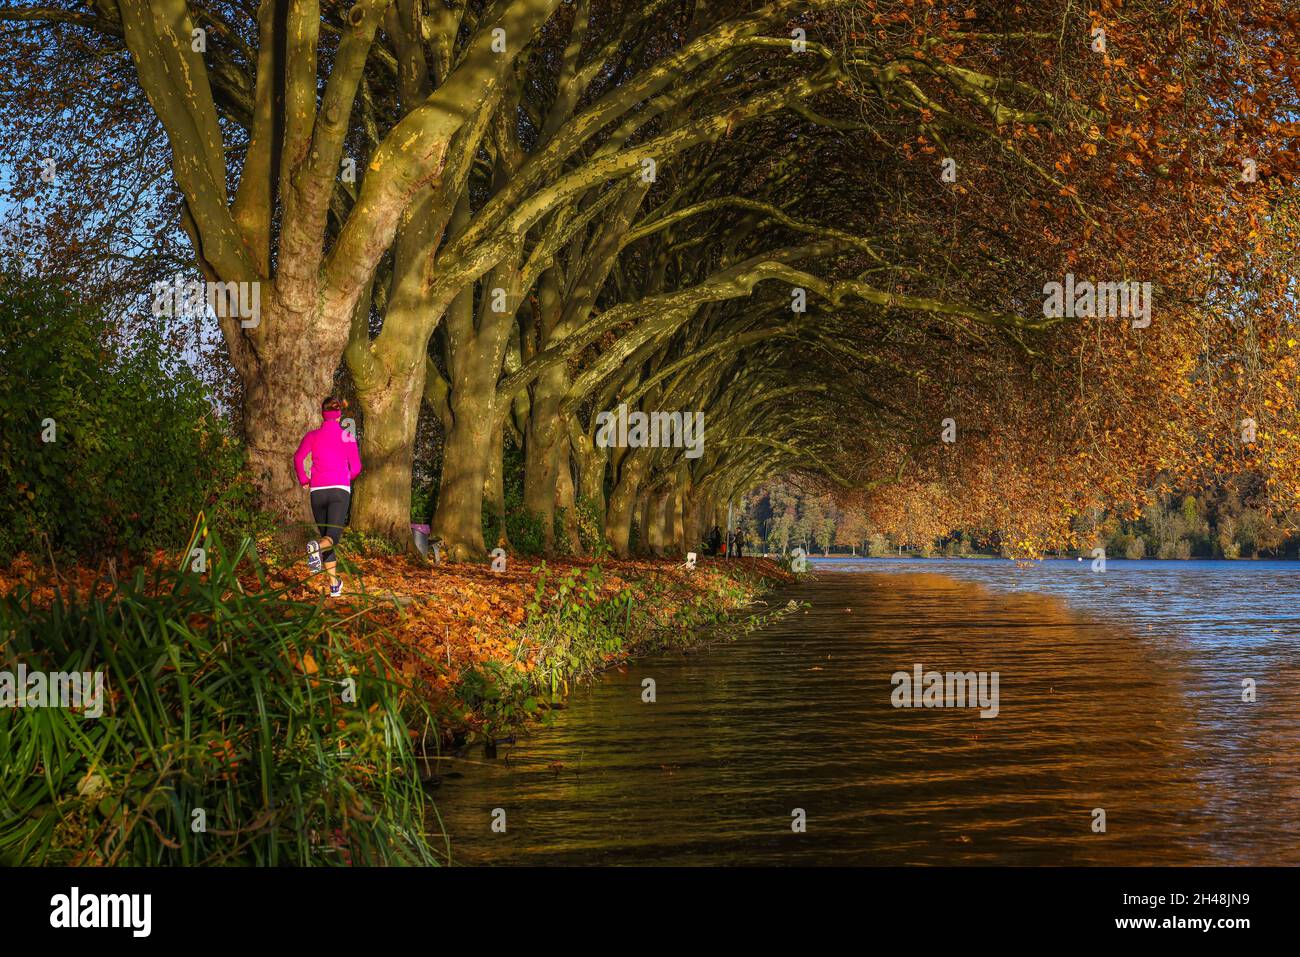 Essen, Nordrhein-Westfalen, Deutschland - Junge Frau joggt am Seeufer unter Bäumen mit Herbstblättern. Goldener Herbst am Baldeneysee. Stockfoto